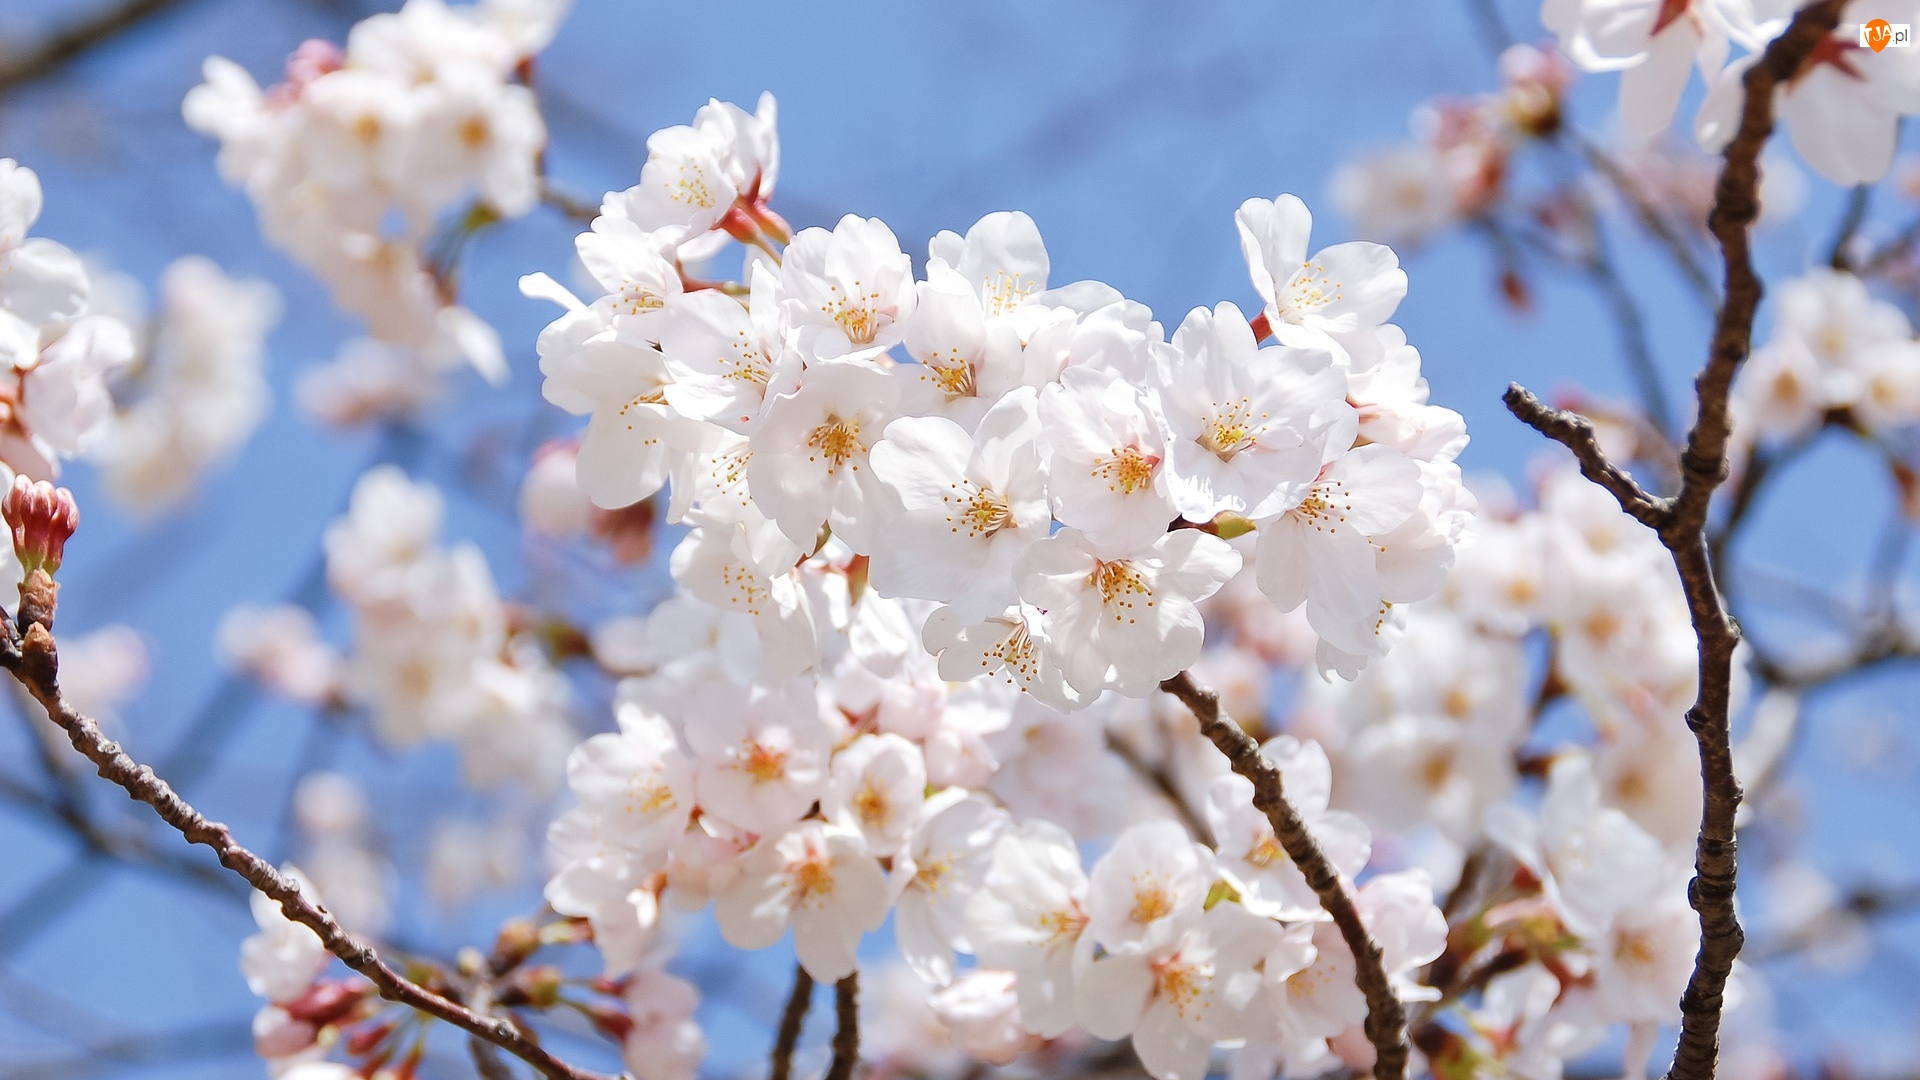 Kwiaty, Drzewo owocowe, Wiśnia japońska, Białe